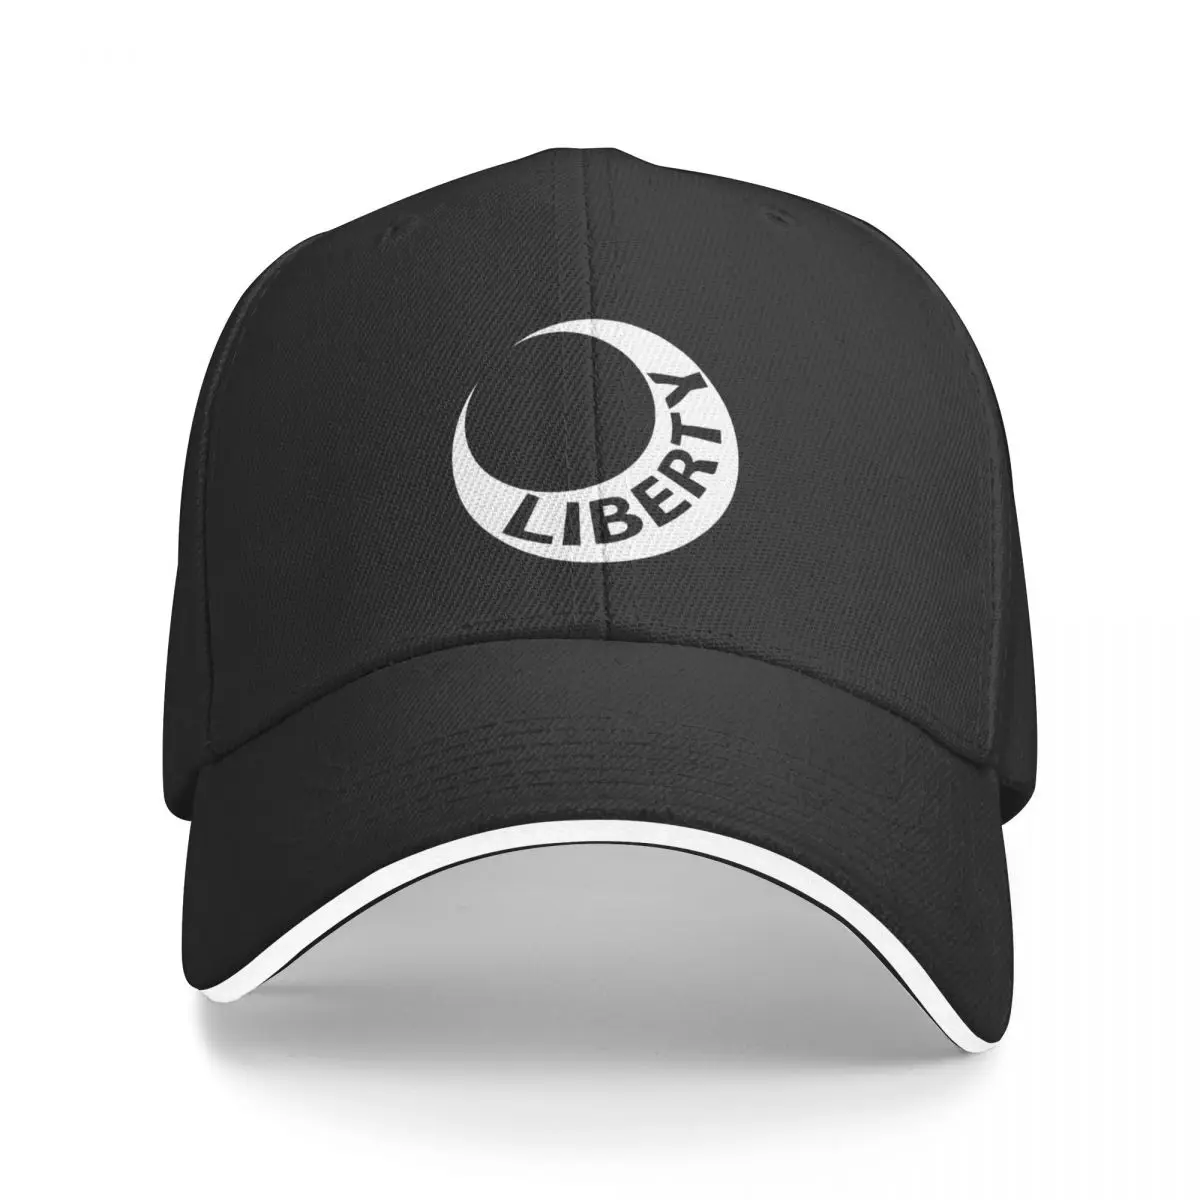 

New Fort Moultrie Liberty Flag USA Baseball Cap Designer Hat Hat Luxury Brand Snap Back Hat Baseball Cap Men Women's